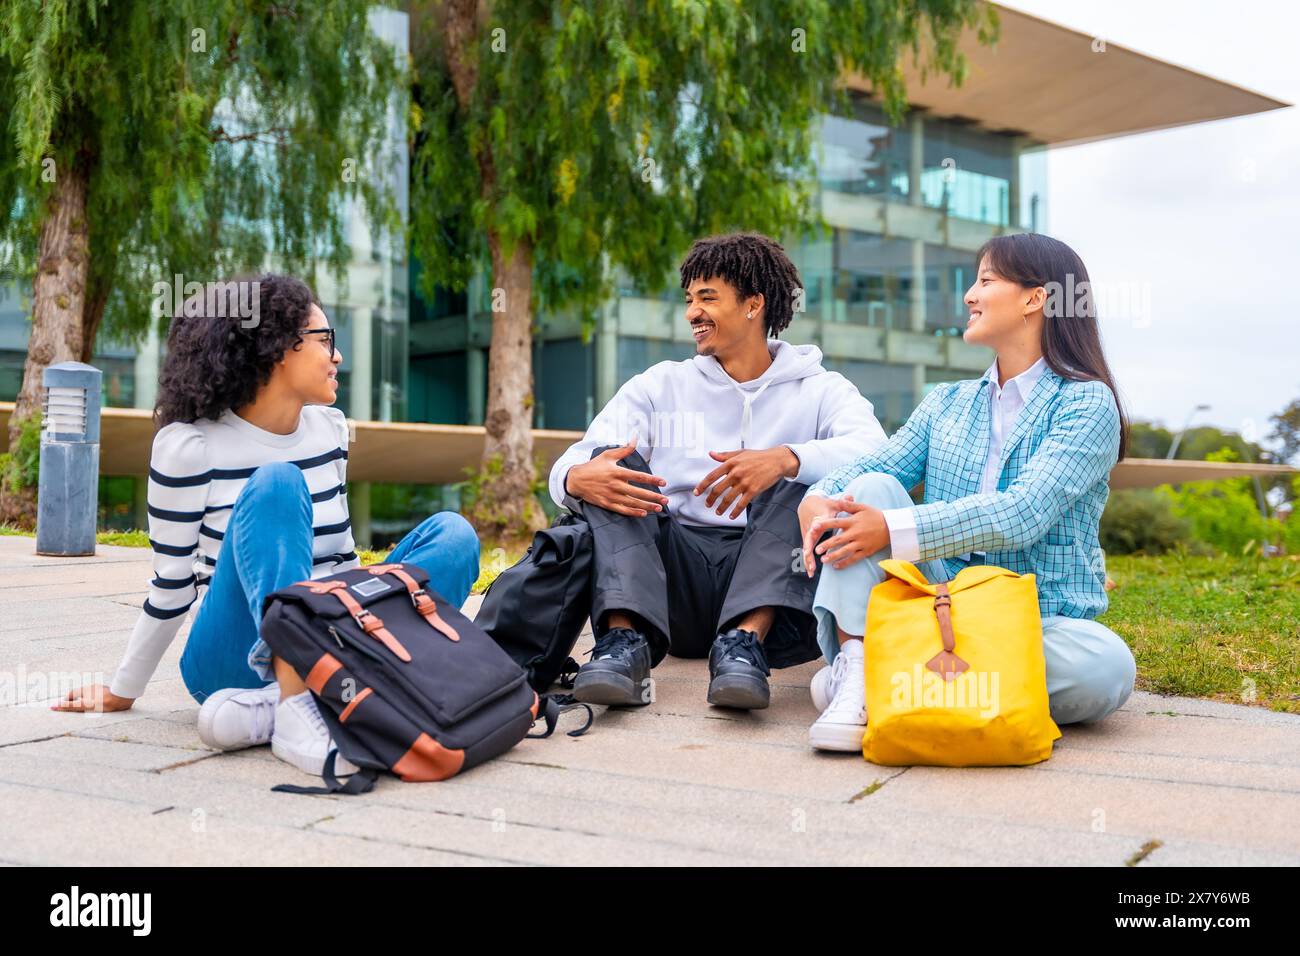 Foto a figura intera di tre studenti multirazziali sorridenti seduti e chiacchierati rilassati nel campus universitario Foto Stock